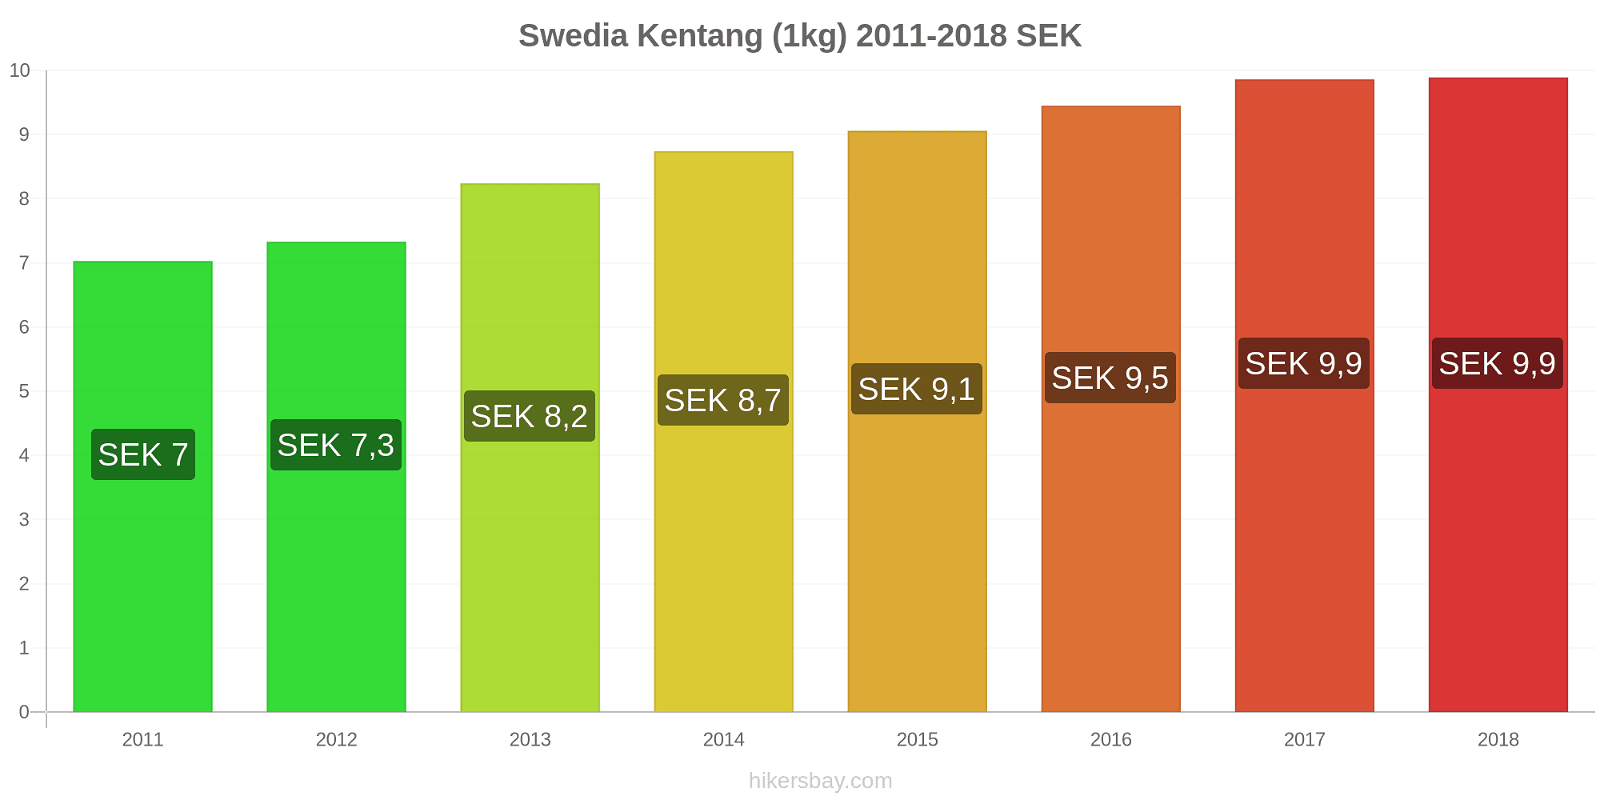 Swedia perubahan harga Kentang (1kg) hikersbay.com